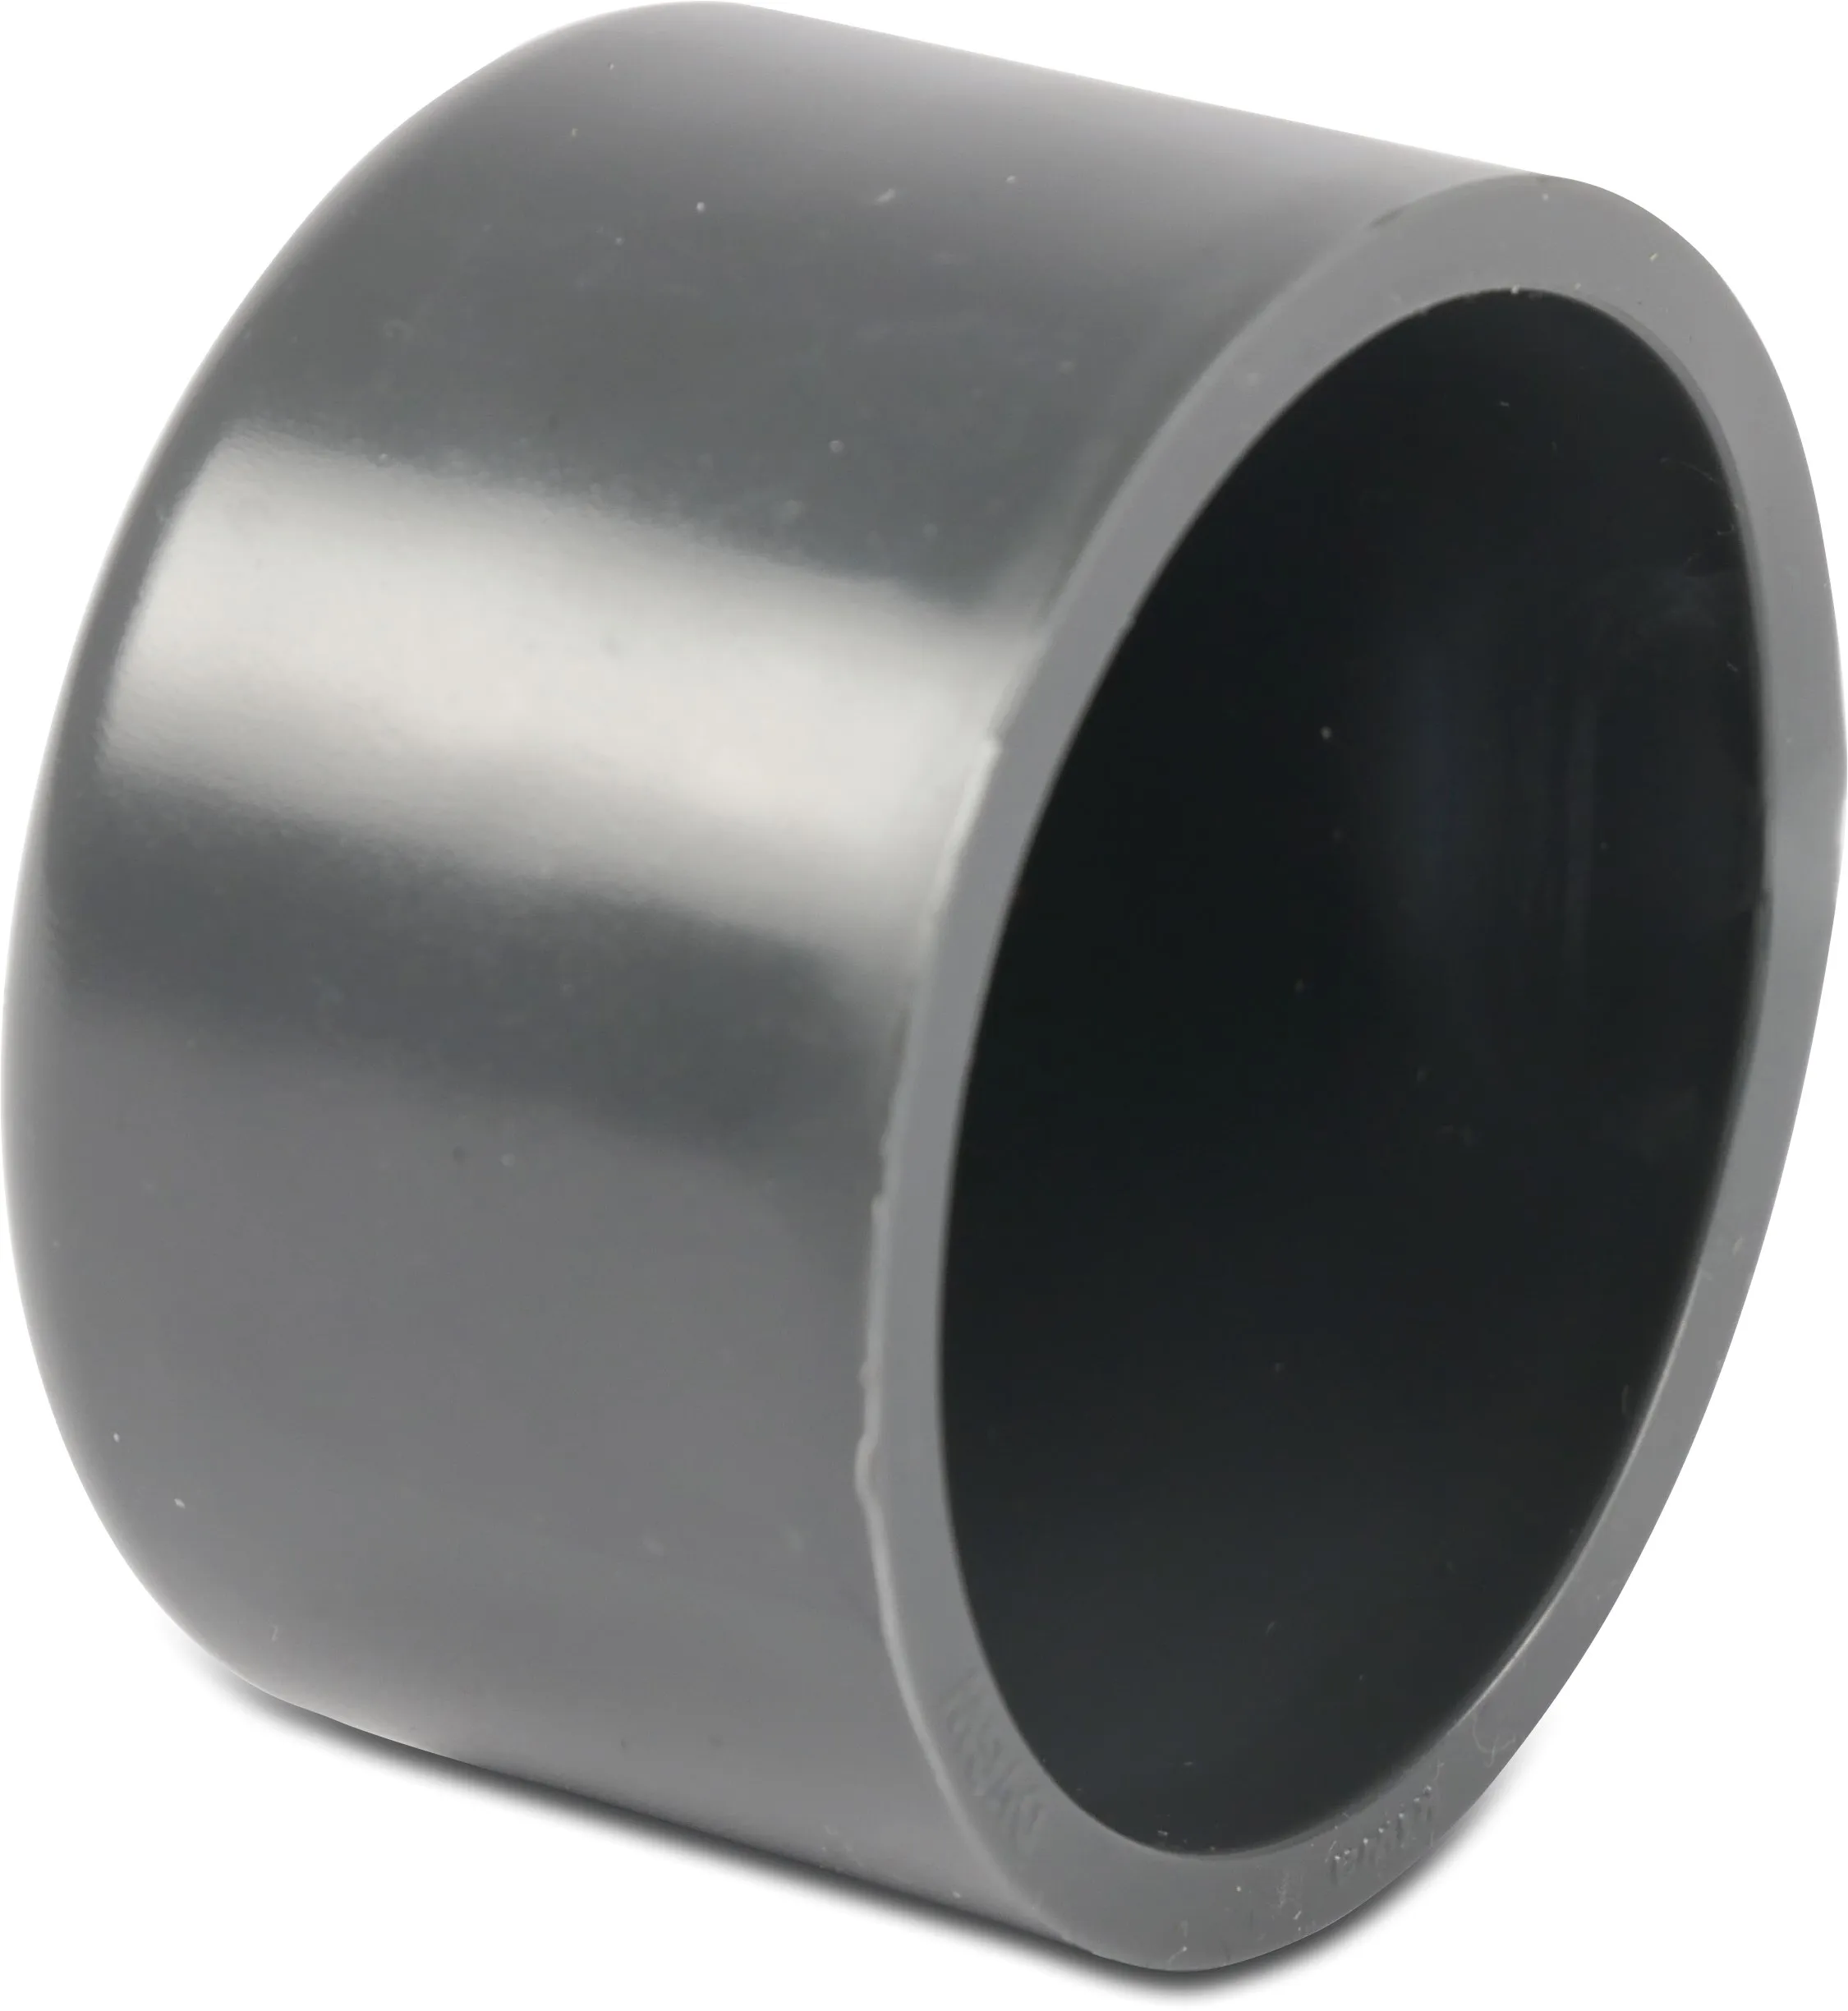 Eindkap PVC-U 20 mm lijmmof 16bar grijs